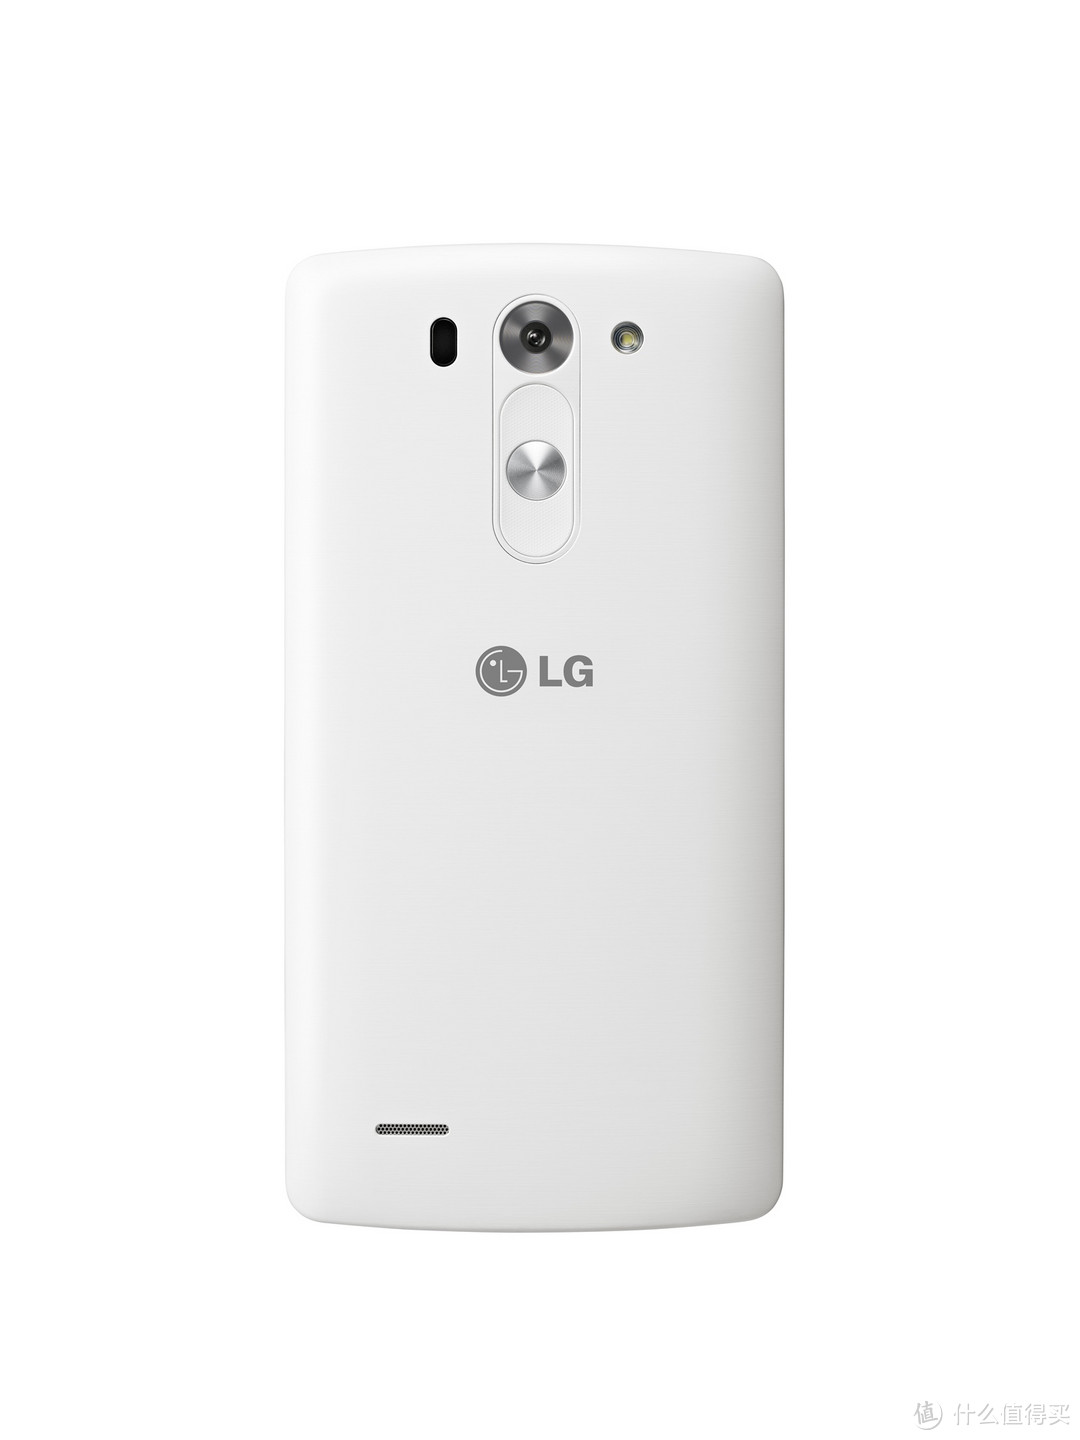 LG 发布迷你版 G3 Beat 缩水5寸720p屏 有国行电信版